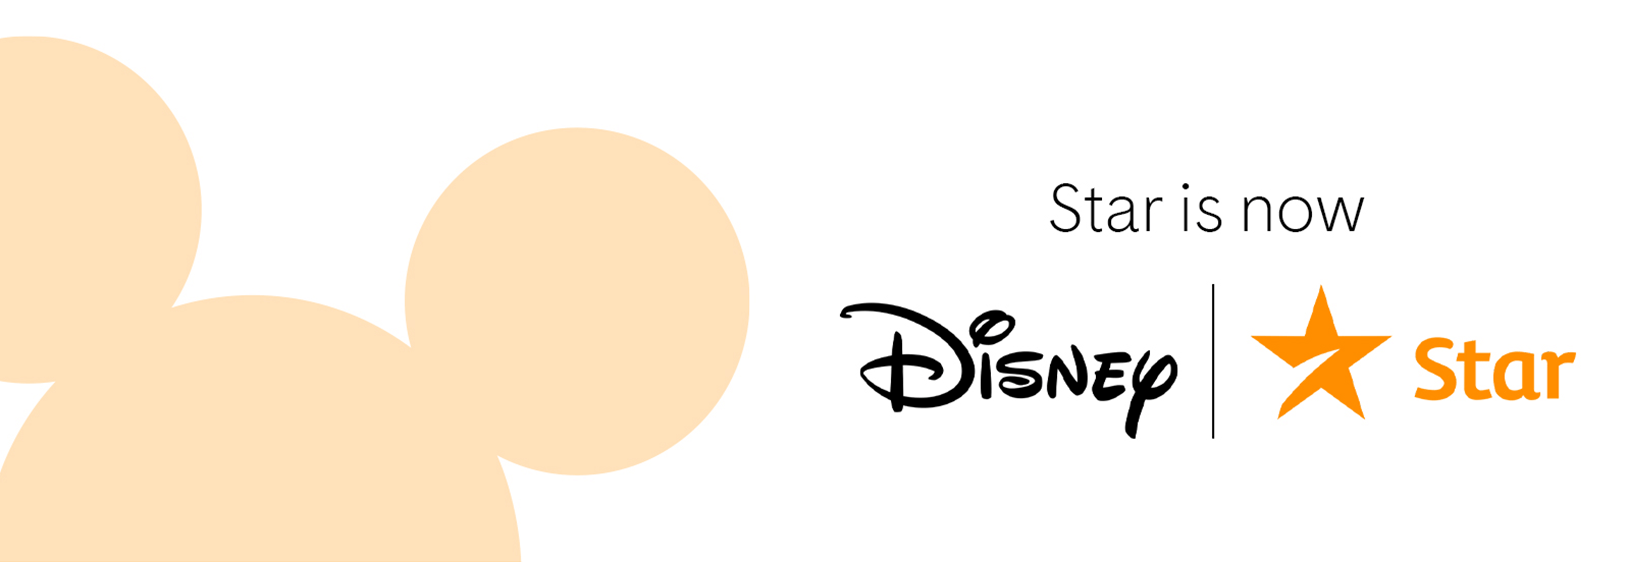 Star is now Disney Star